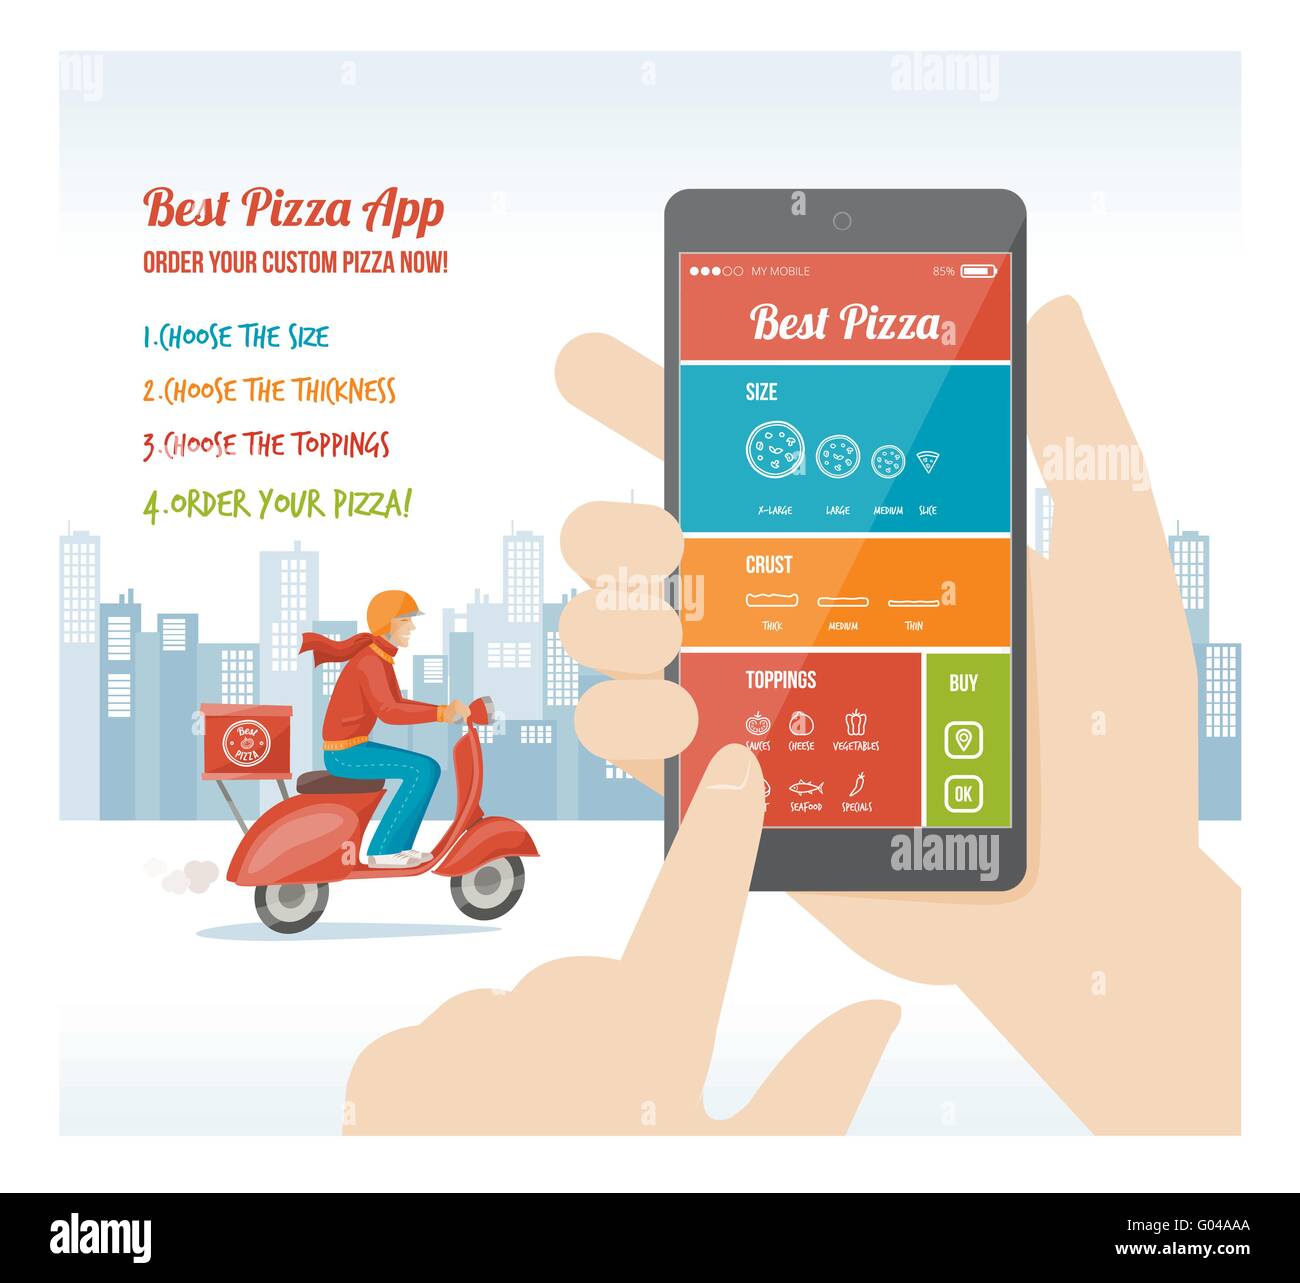 La pizza migliore app interface design con ingrediente e icone sul display mobile Illustrazione Vettoriale